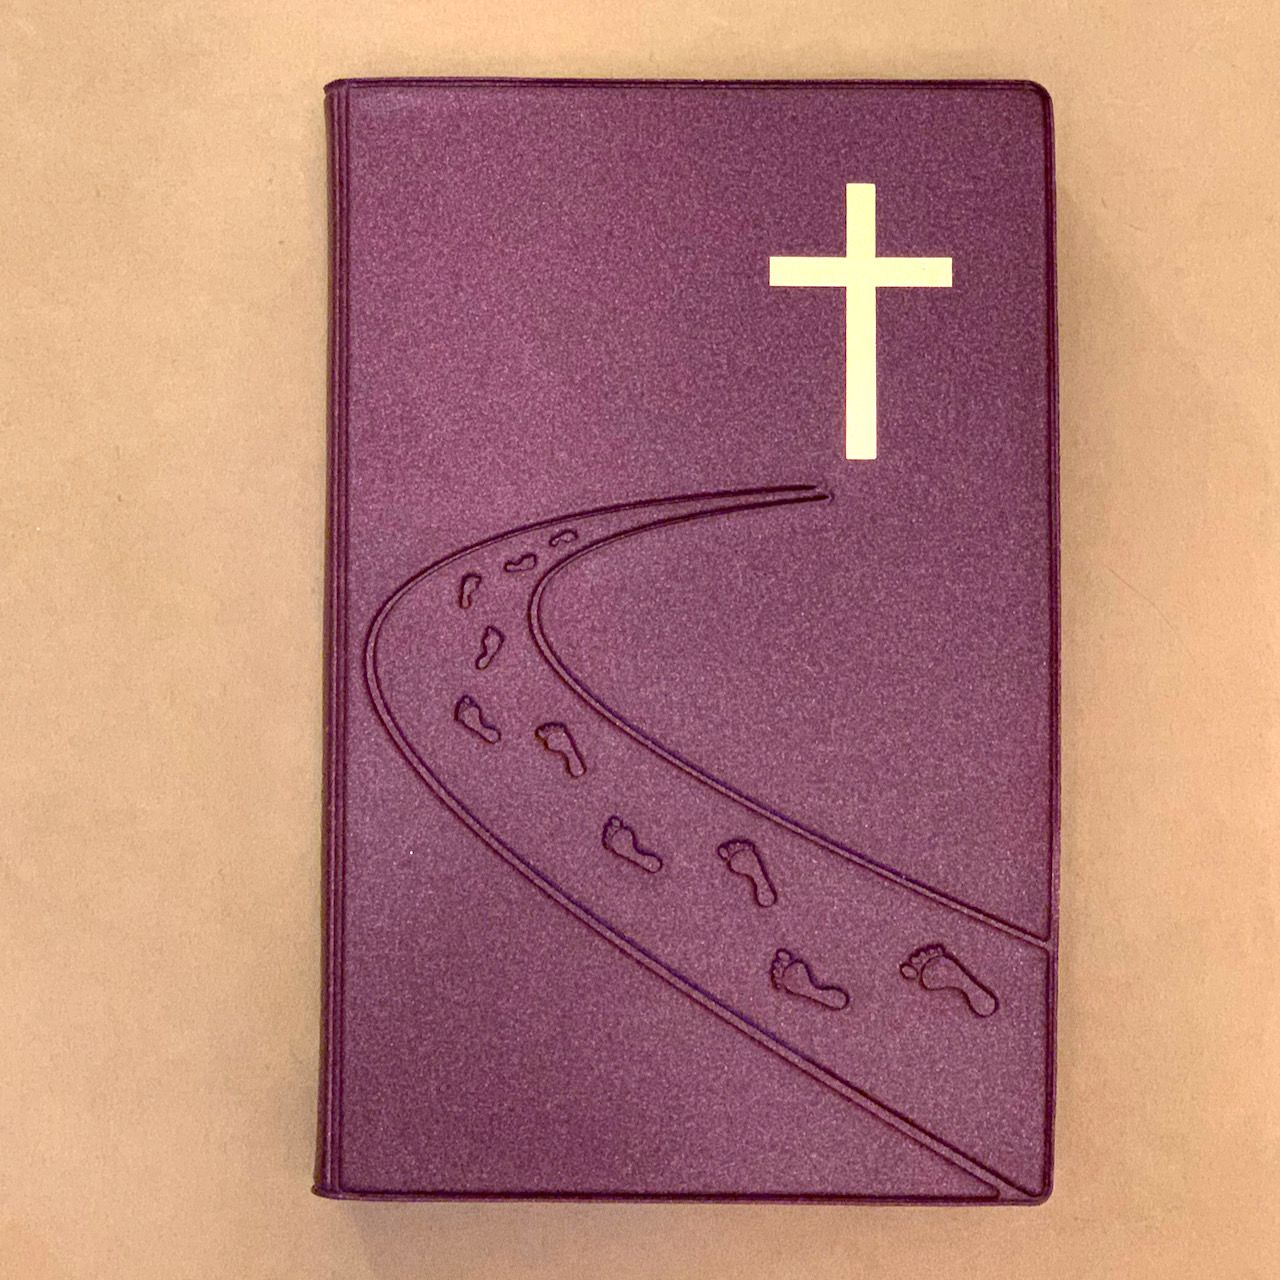 Библия 055 код C3 7115 переплет из искусственной кожи, цвет фиолетовый металлик, дизайн "дорога ко Кресту", надпись "Библия" с торца, средний формат, 140*213 мм, параллельные места по центру страницы, крупный шрифт